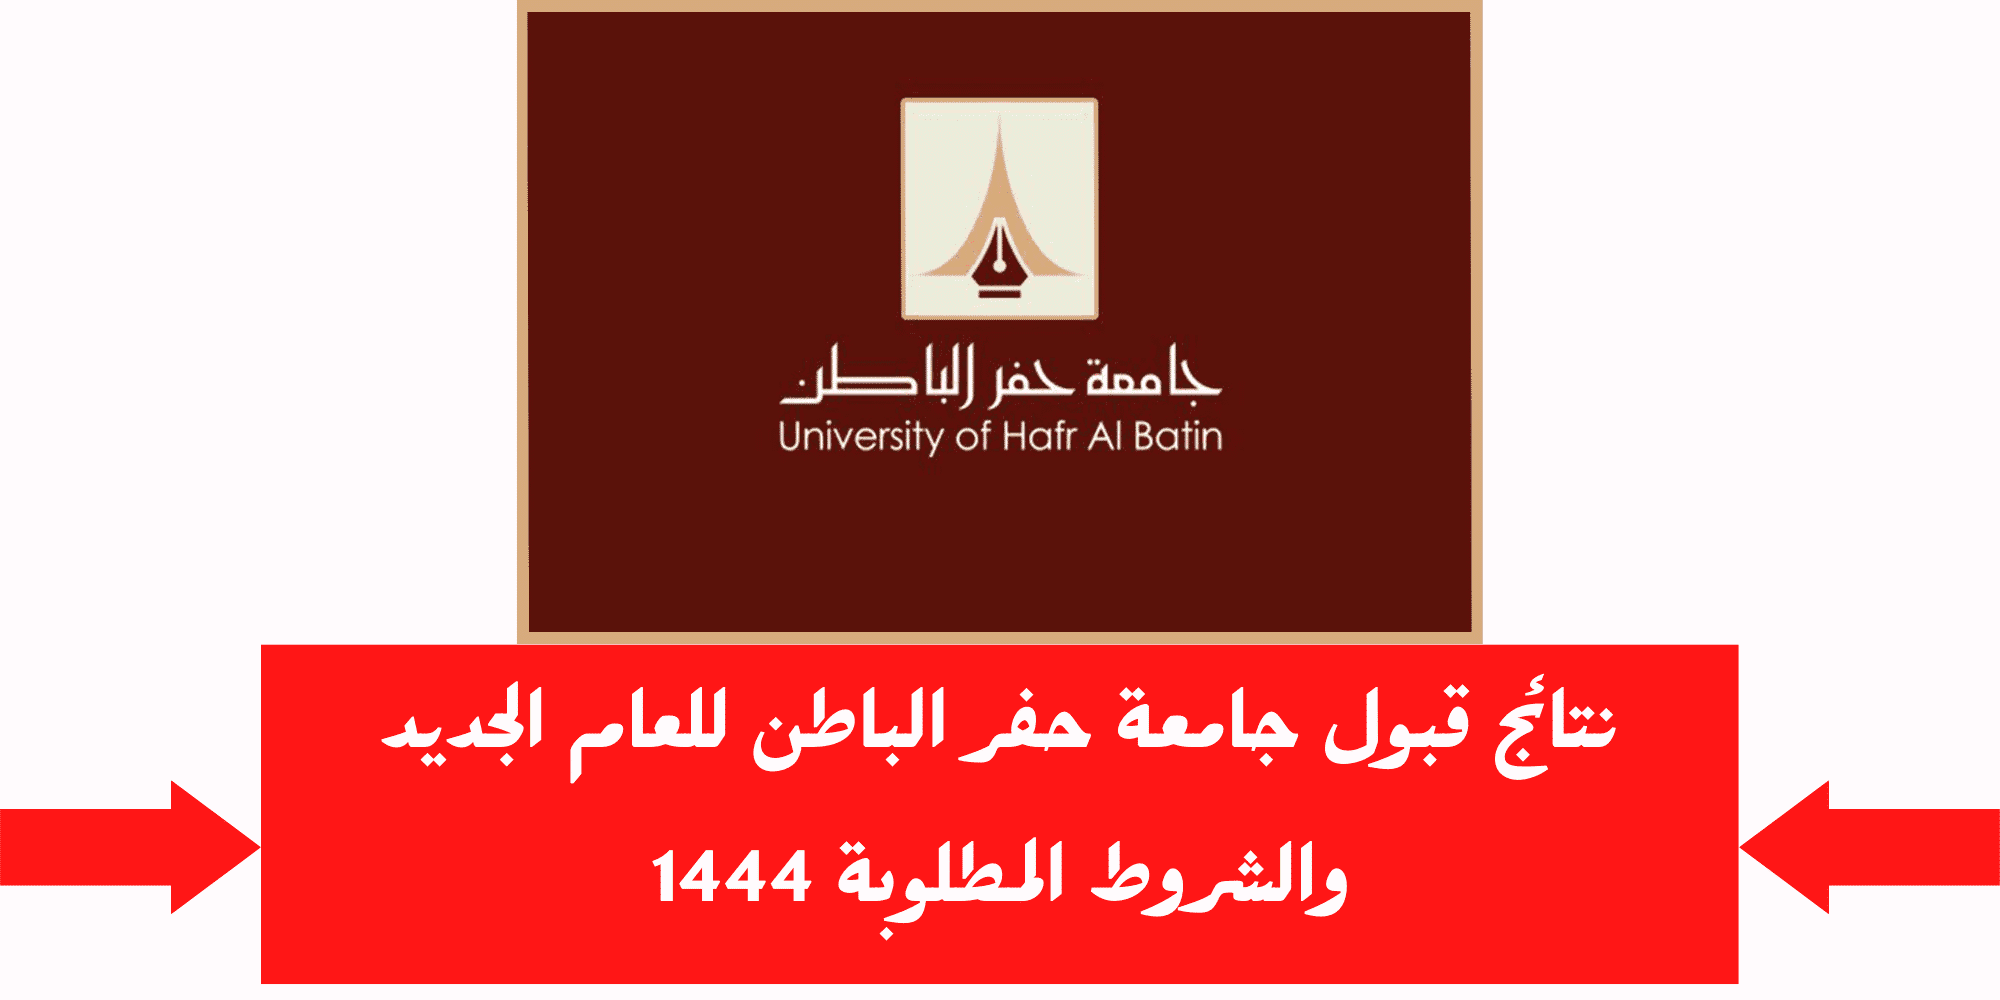 جامعة حفر الباطن